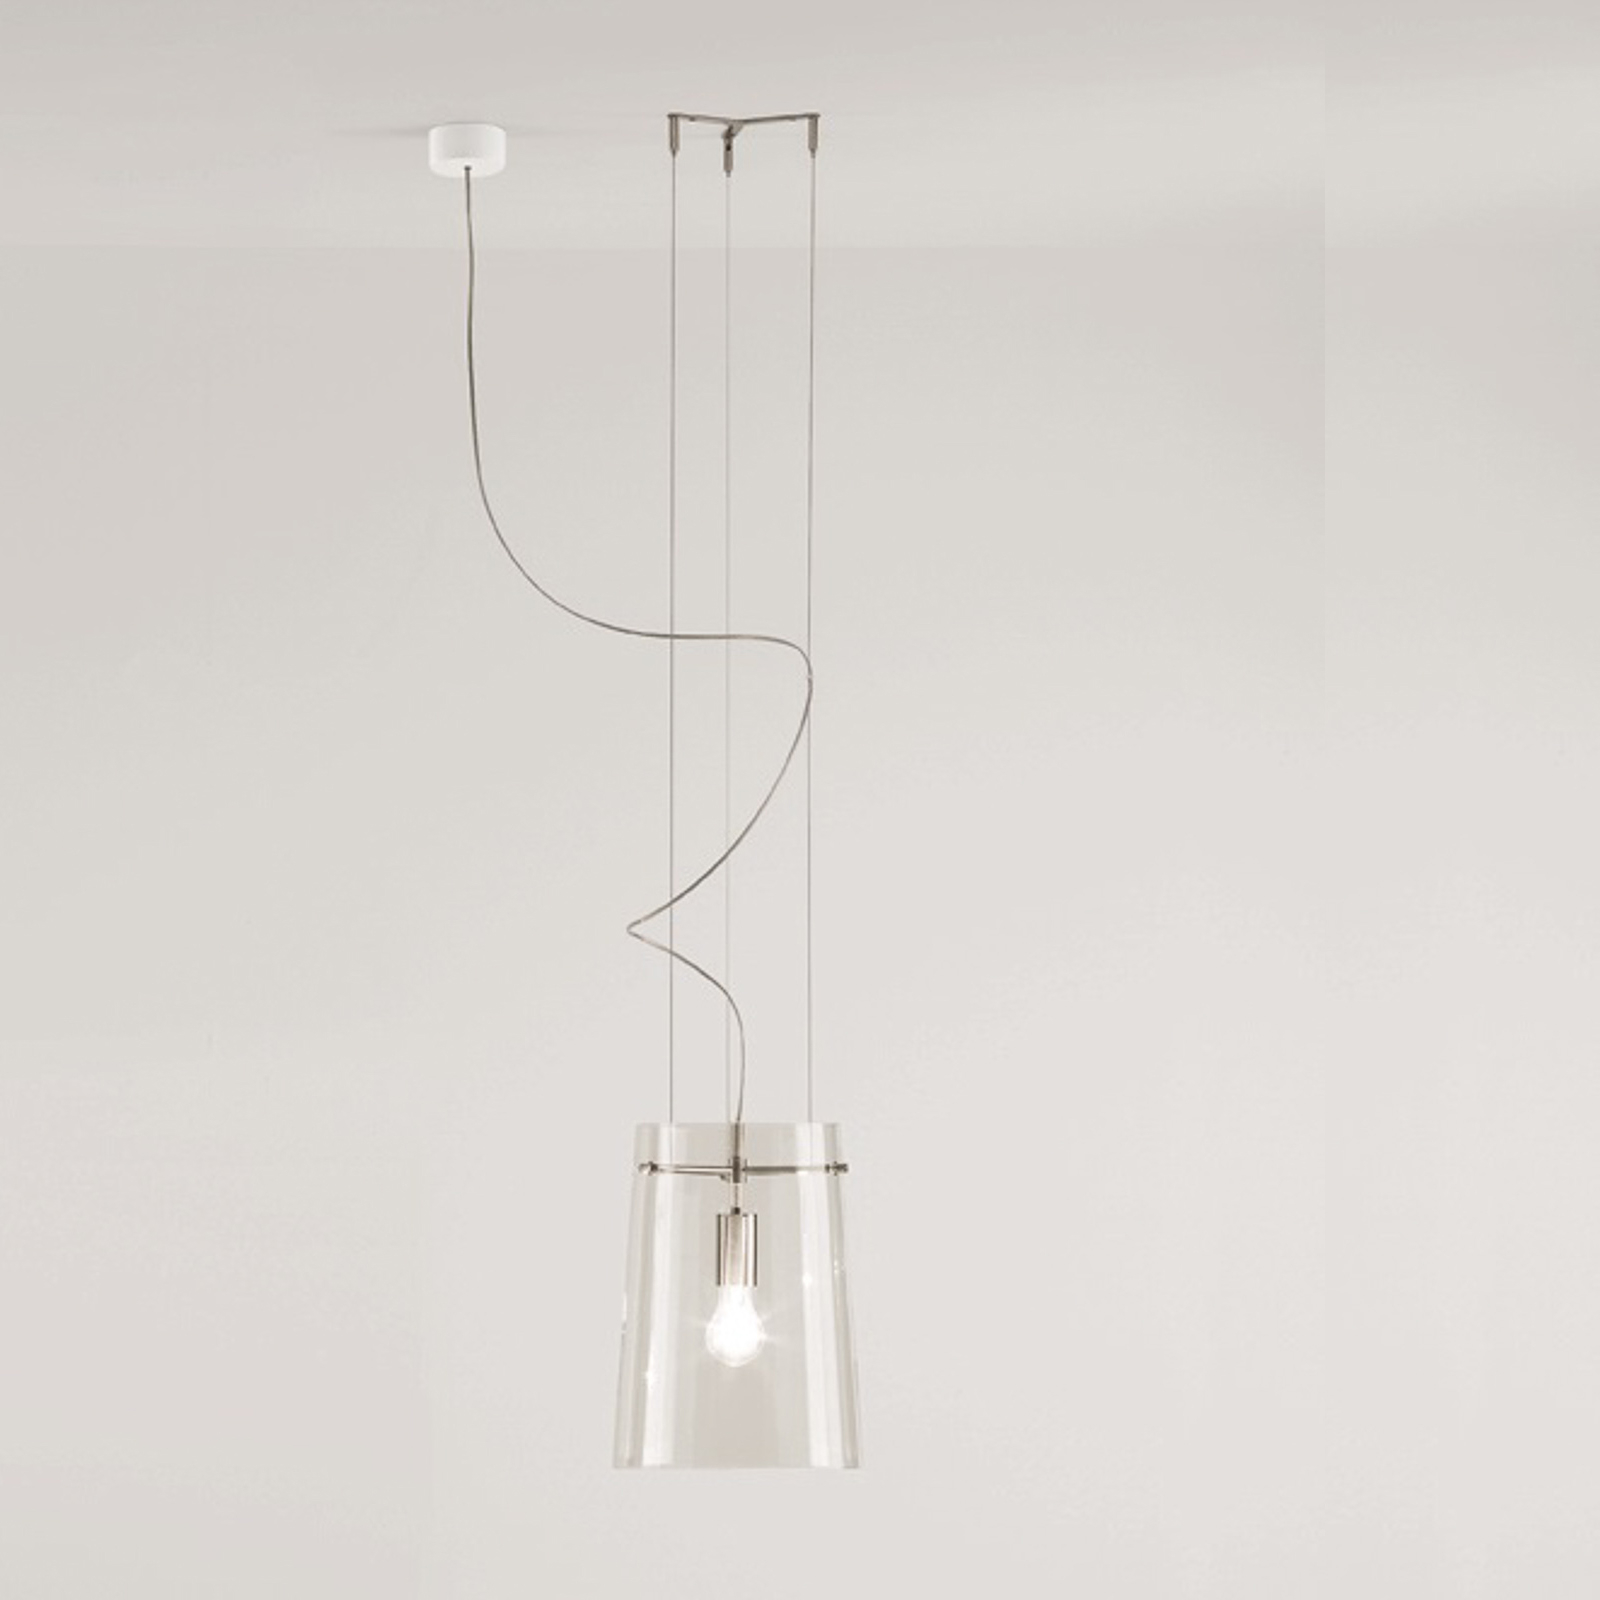 Prandina Sera S1 hanglamp, helder, Ø 27,5 cm